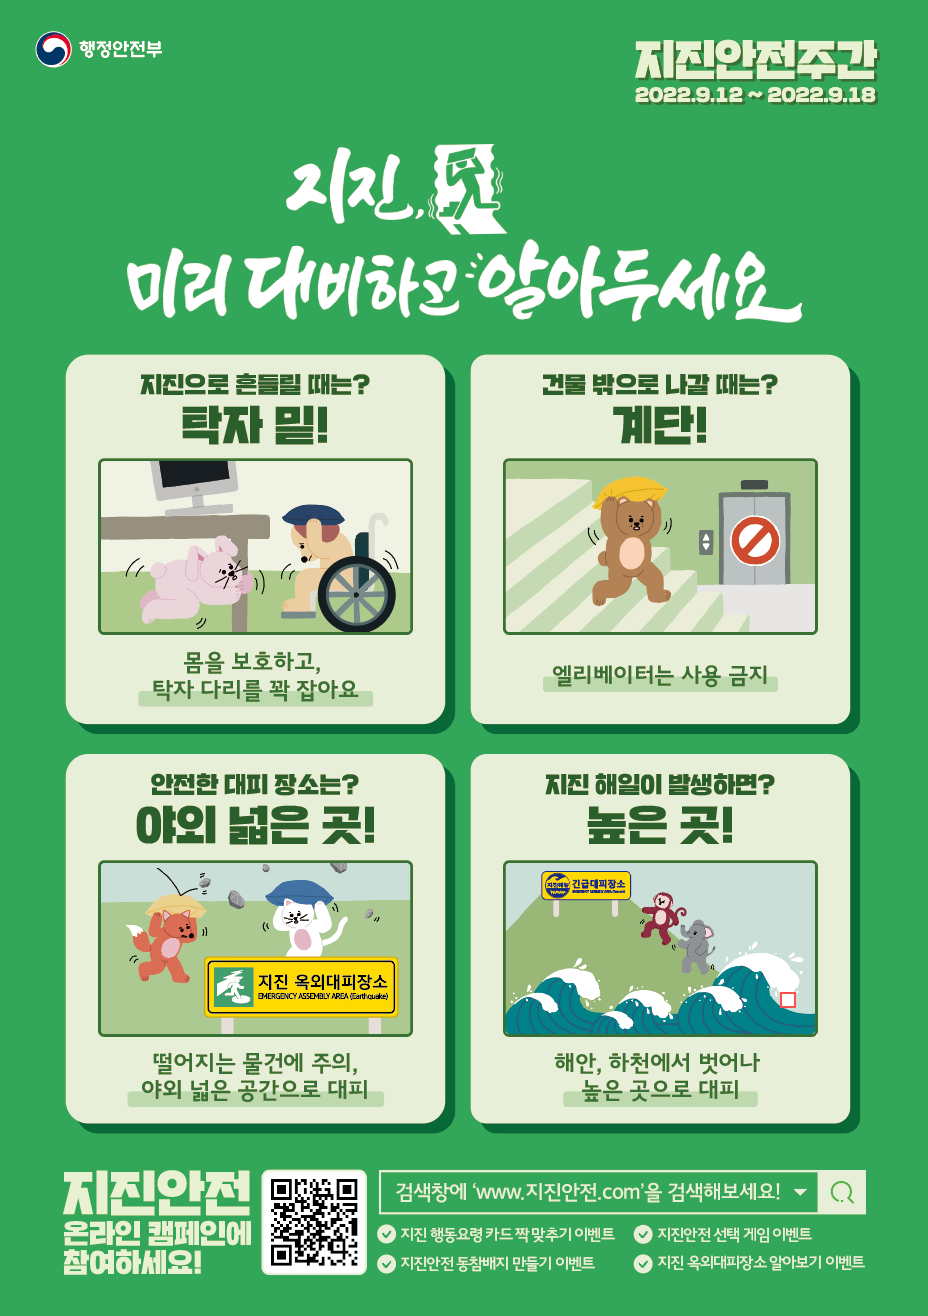 [행정안전부] 2022년 지진안전 캠페인 홍보용 포스터1.png